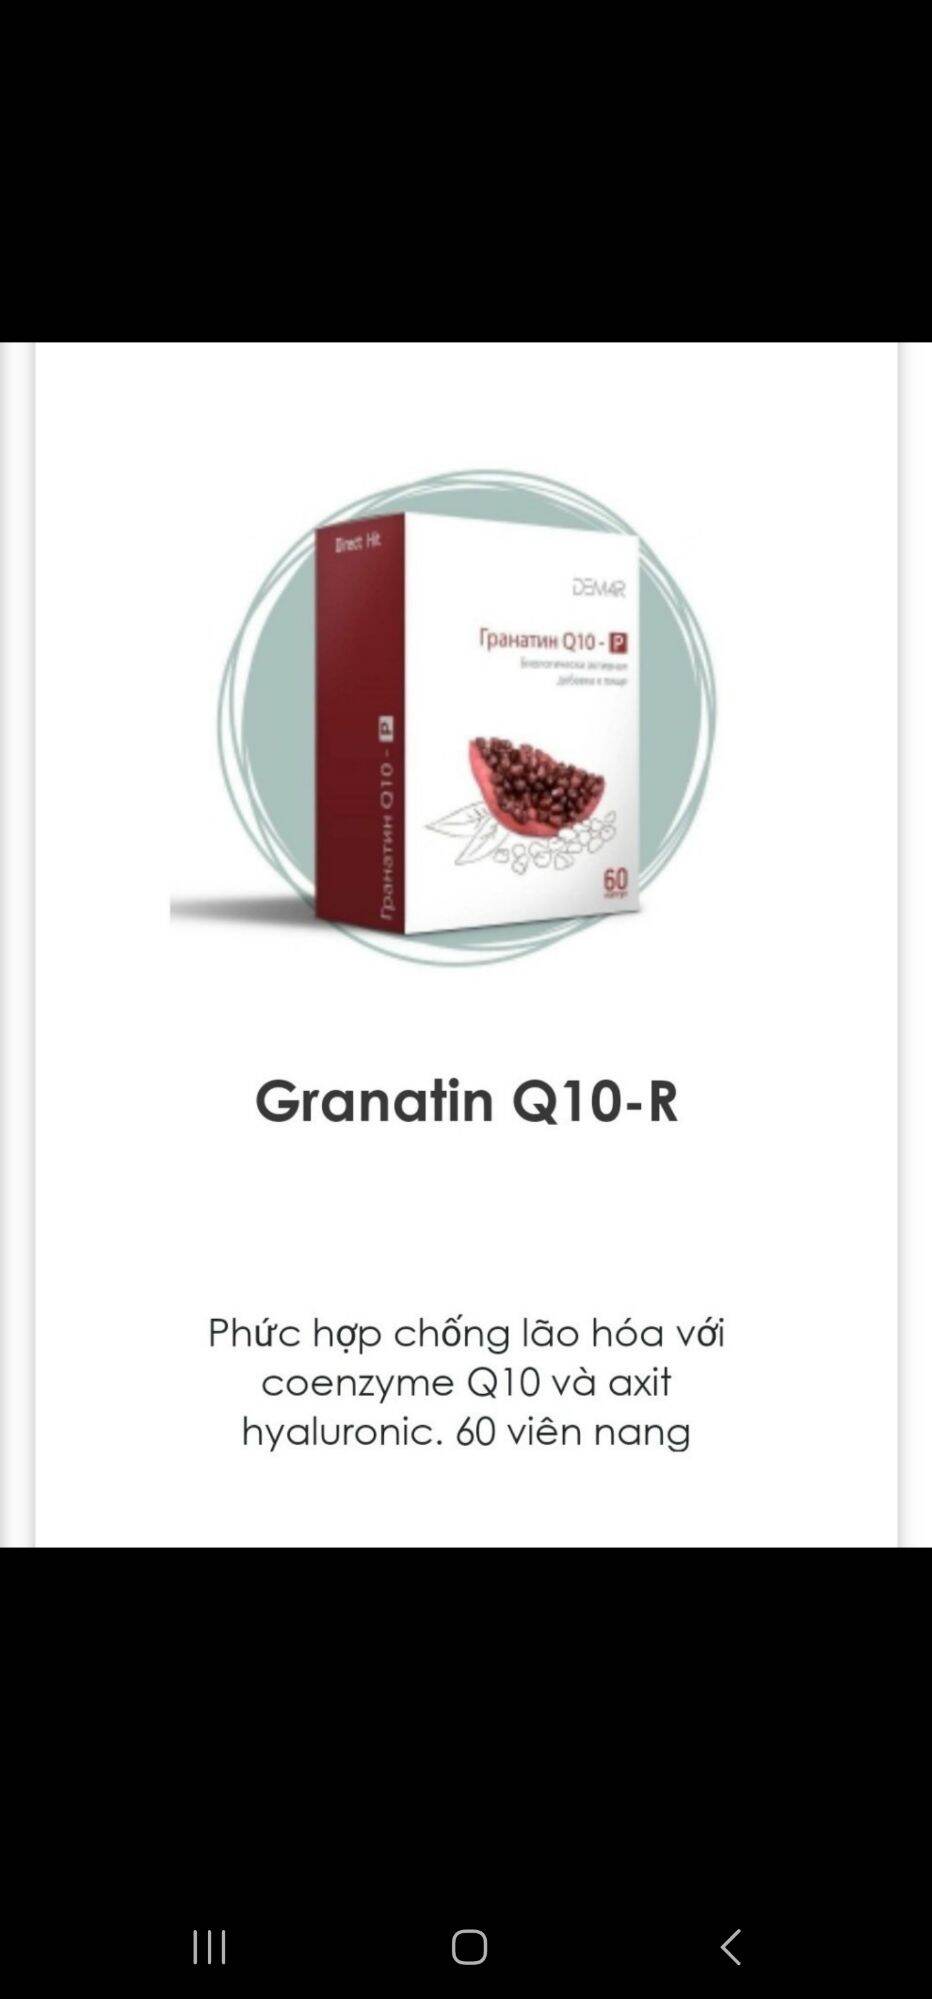 SHOP NGỌC NHI GRANATIN Q10 - R Vision. Hỗ trợ tim mạch.Hộp 60 viên